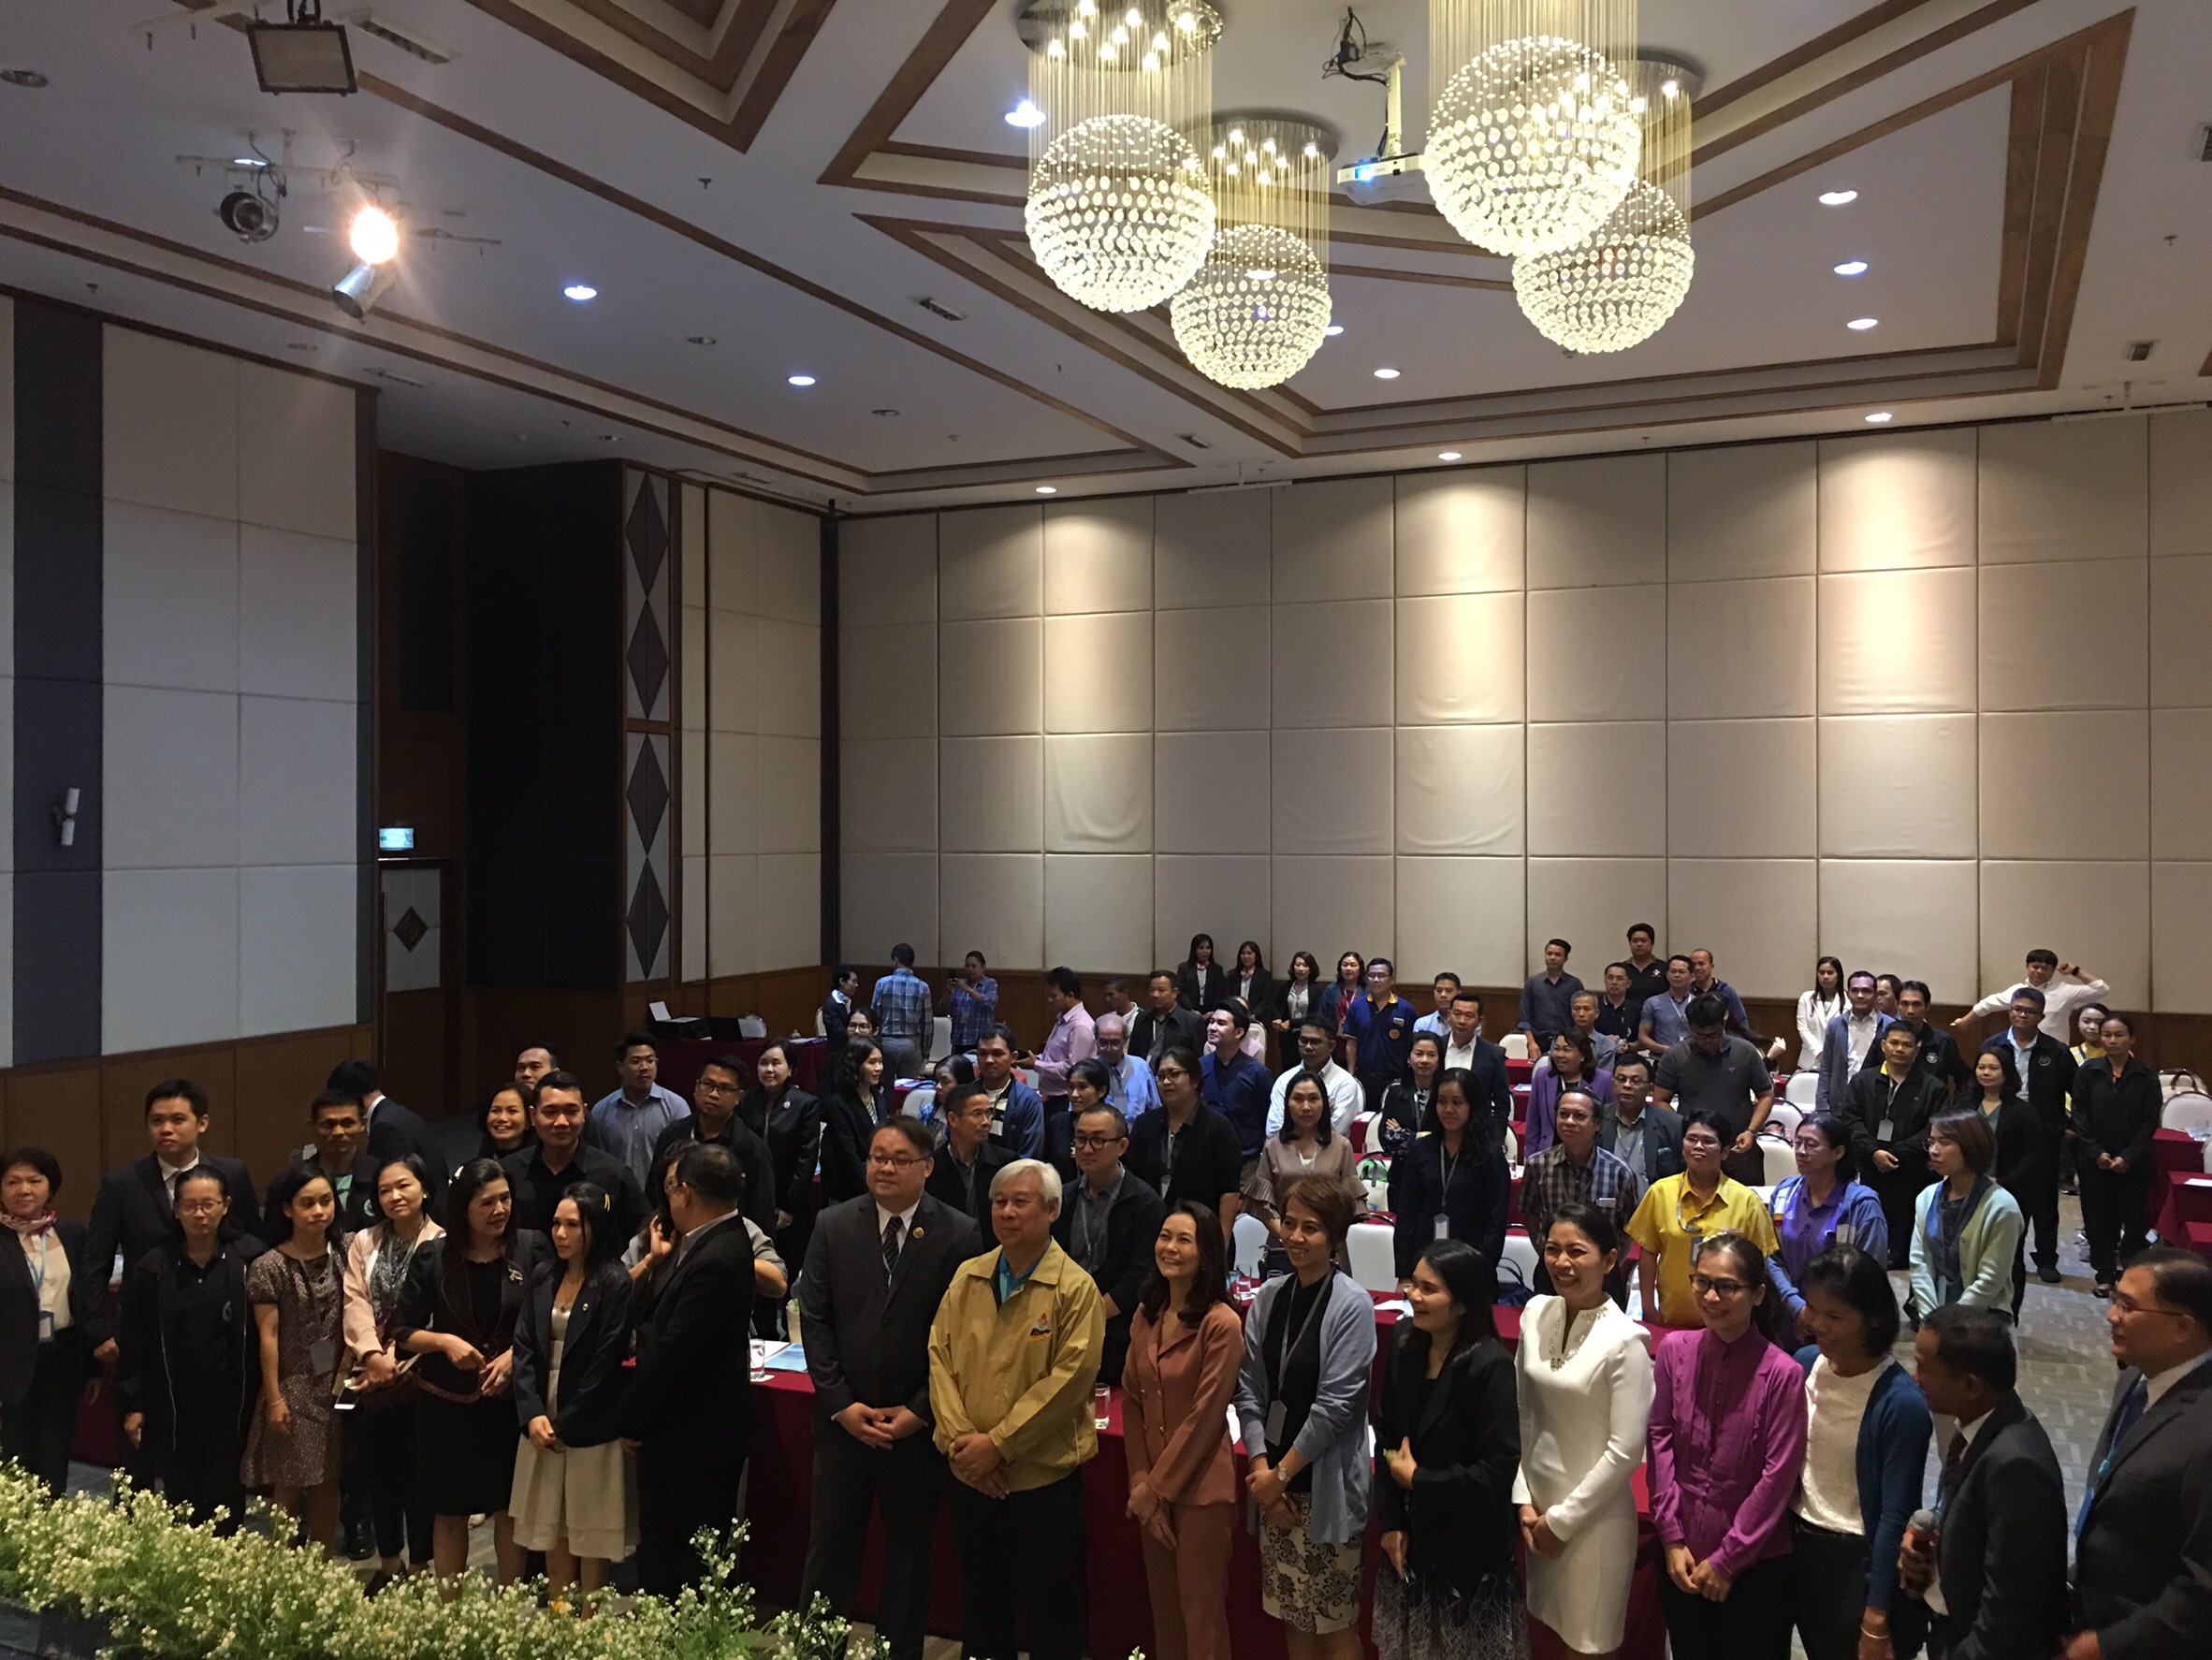 ประชุมวิชาการร่วมกับรังสีการแพทย์แห่งประเทศไทย ครั้งที่17 27-29 พ.ย. - พร้อมเข้าเยี่ยมและให้กำลังใจหน่วยงานรังสีวิทยาในพื้นที่จังหวัดอุบลราชธานีระหว่างวันที่ 25-26 พฤศจิกายน 2562 19